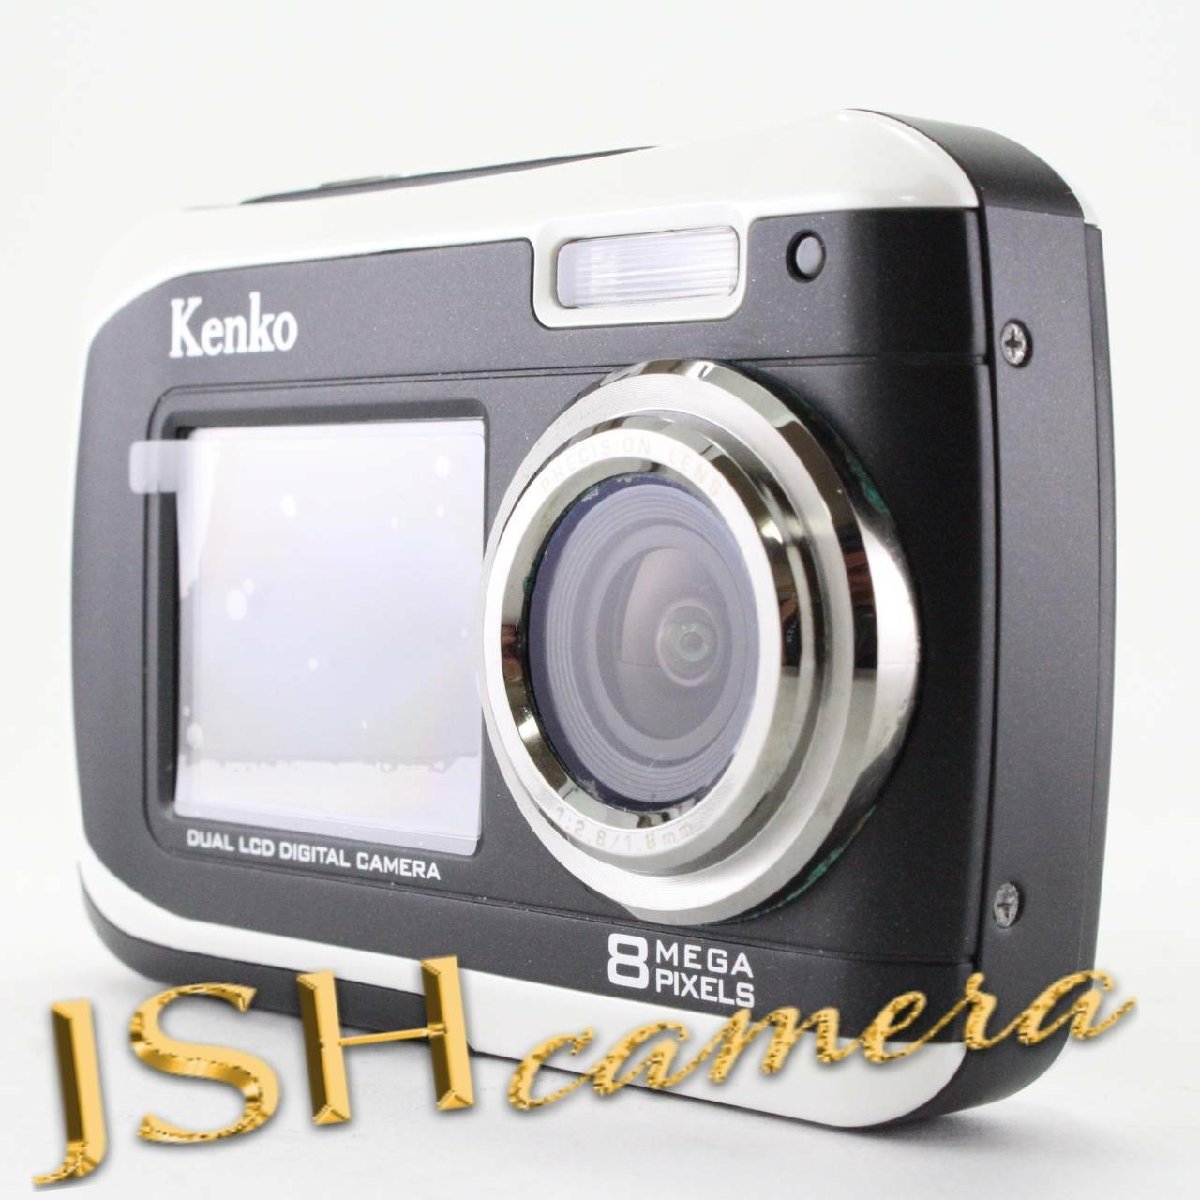 【中古】Kenko デュアルモニターデジタルカメラ DSC880DW IPX8相当防水 DSC880DW